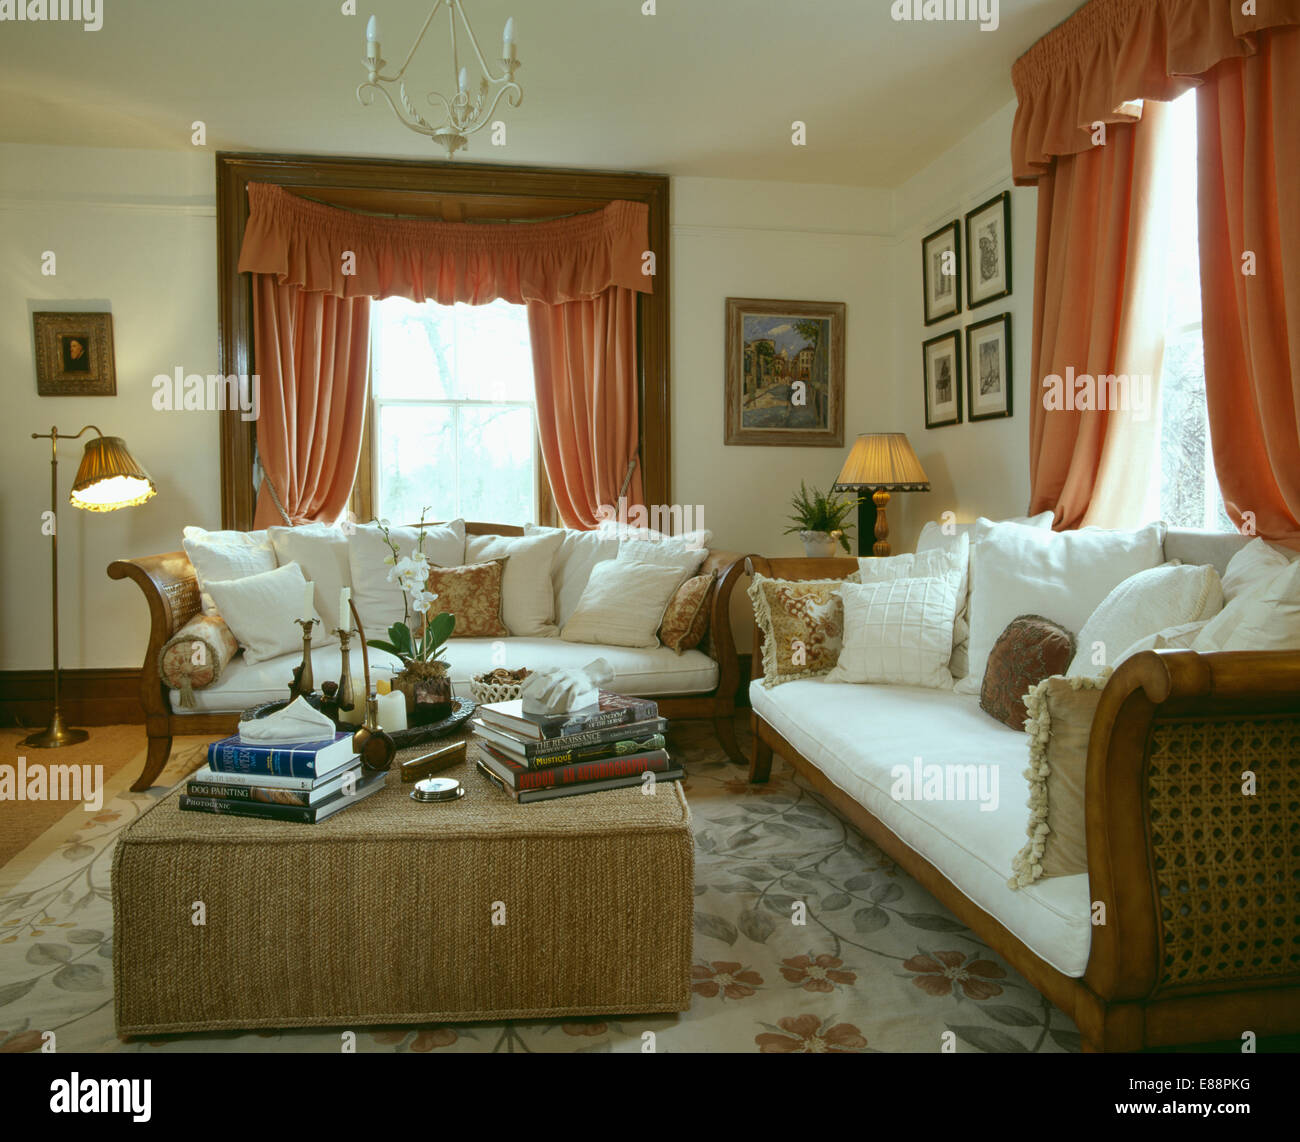 Weißen Kissen auf französischem Sofas im Wohnzimmer mit maßgeschneiderten Hocker und Pfirsich Vorhänge Stockfoto